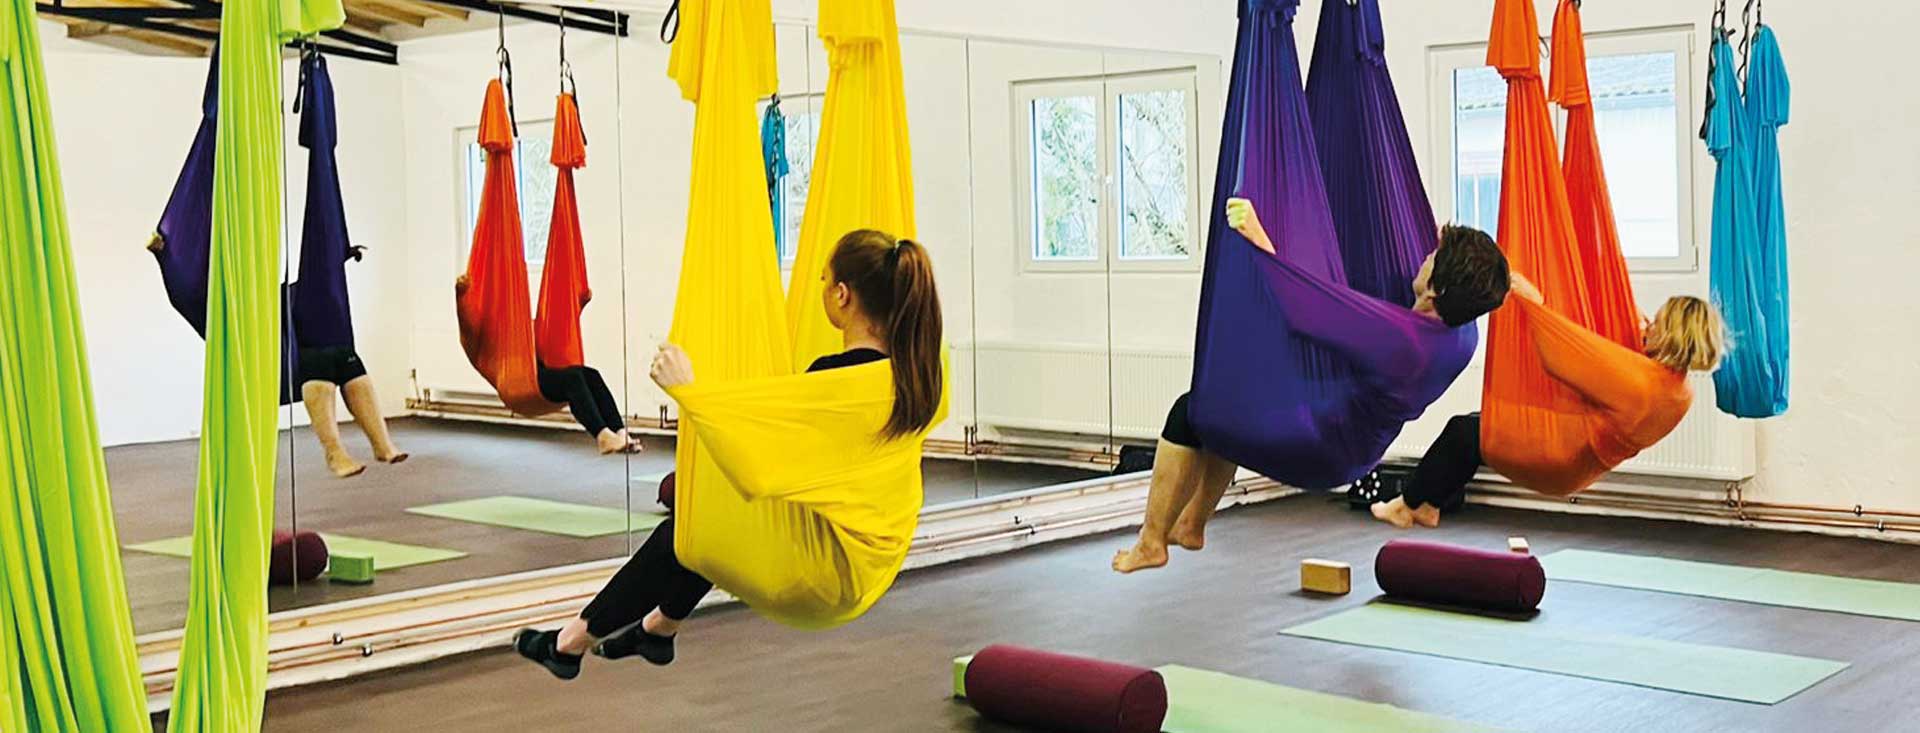 Aerial Yogo, Yoga im Tuch verlagert die Asanas in die Luft